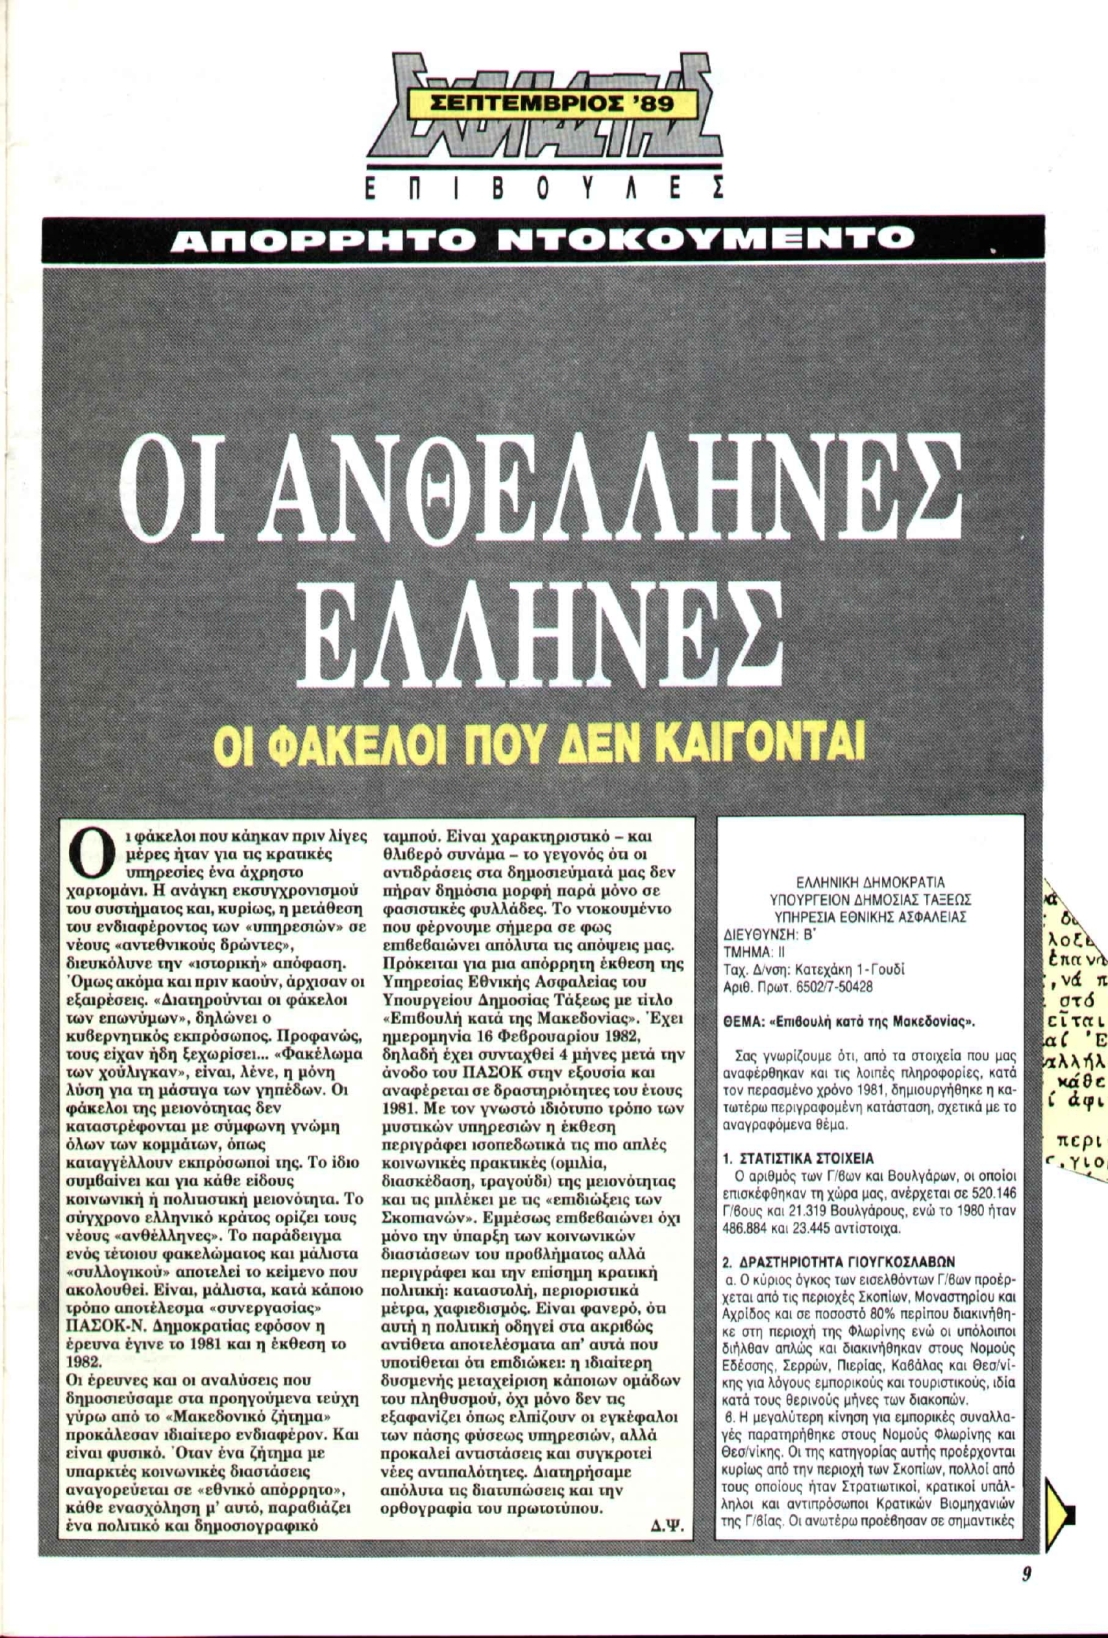 Σχολιαστής, τχ #79, Σεπτέμβριος 1989, Δημήτρης Ψαρράς, Οι ανθέλληνες Ελληνες, Οι φάκελοι που δεν καίγονται, Απόρρητο ντοκουμέντο, Επιβουλή κατά της Μακεδονίας